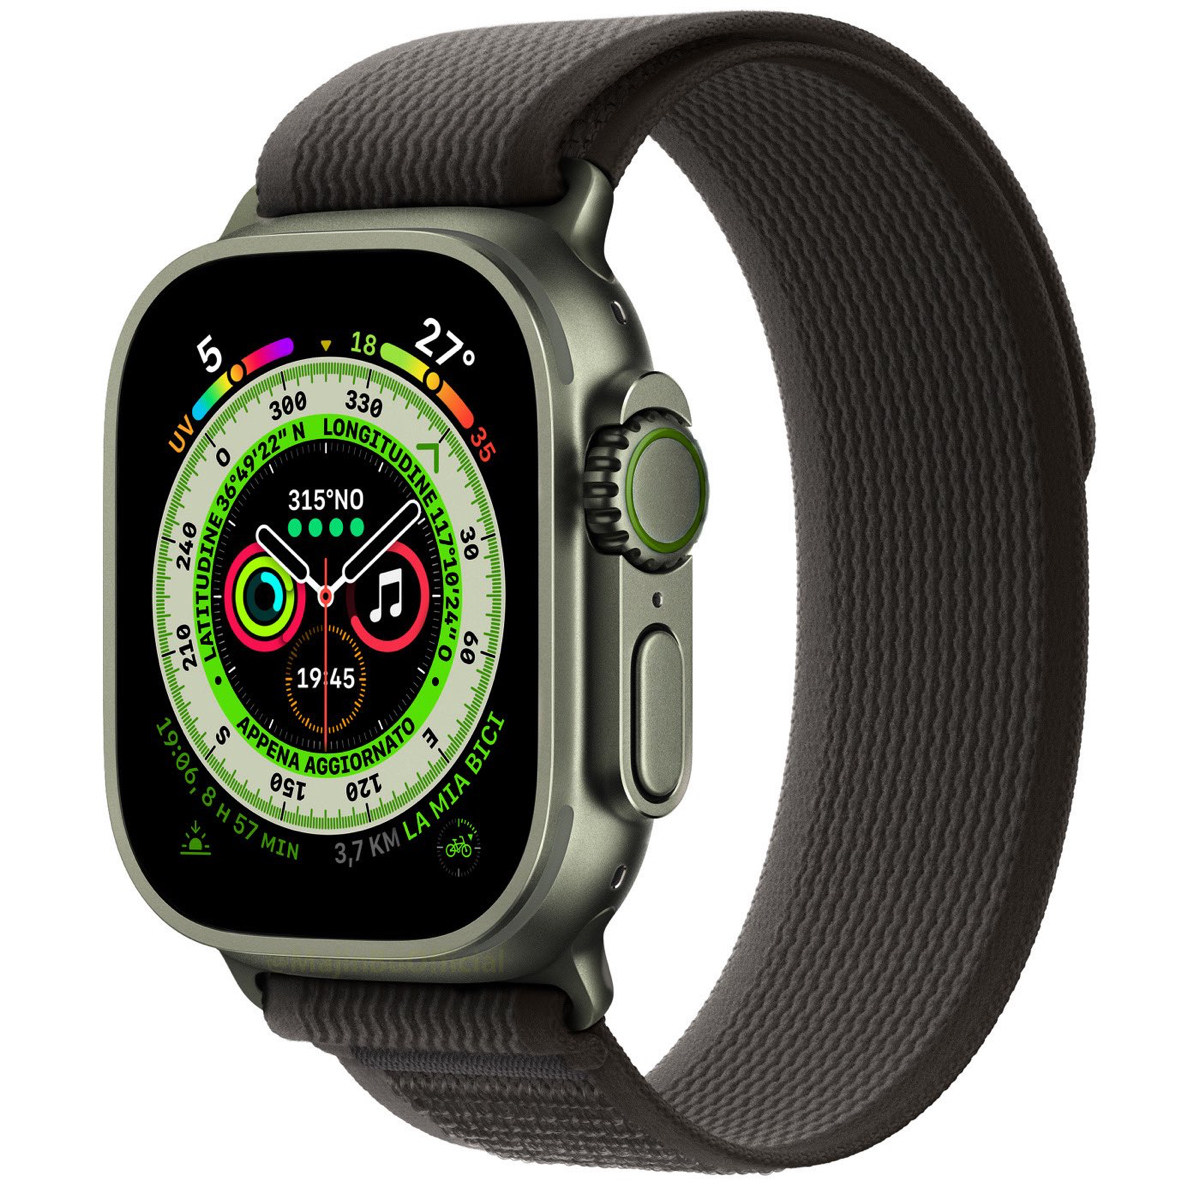 Apple Watch nhiều màu hơn sẽ ổn ha anh em